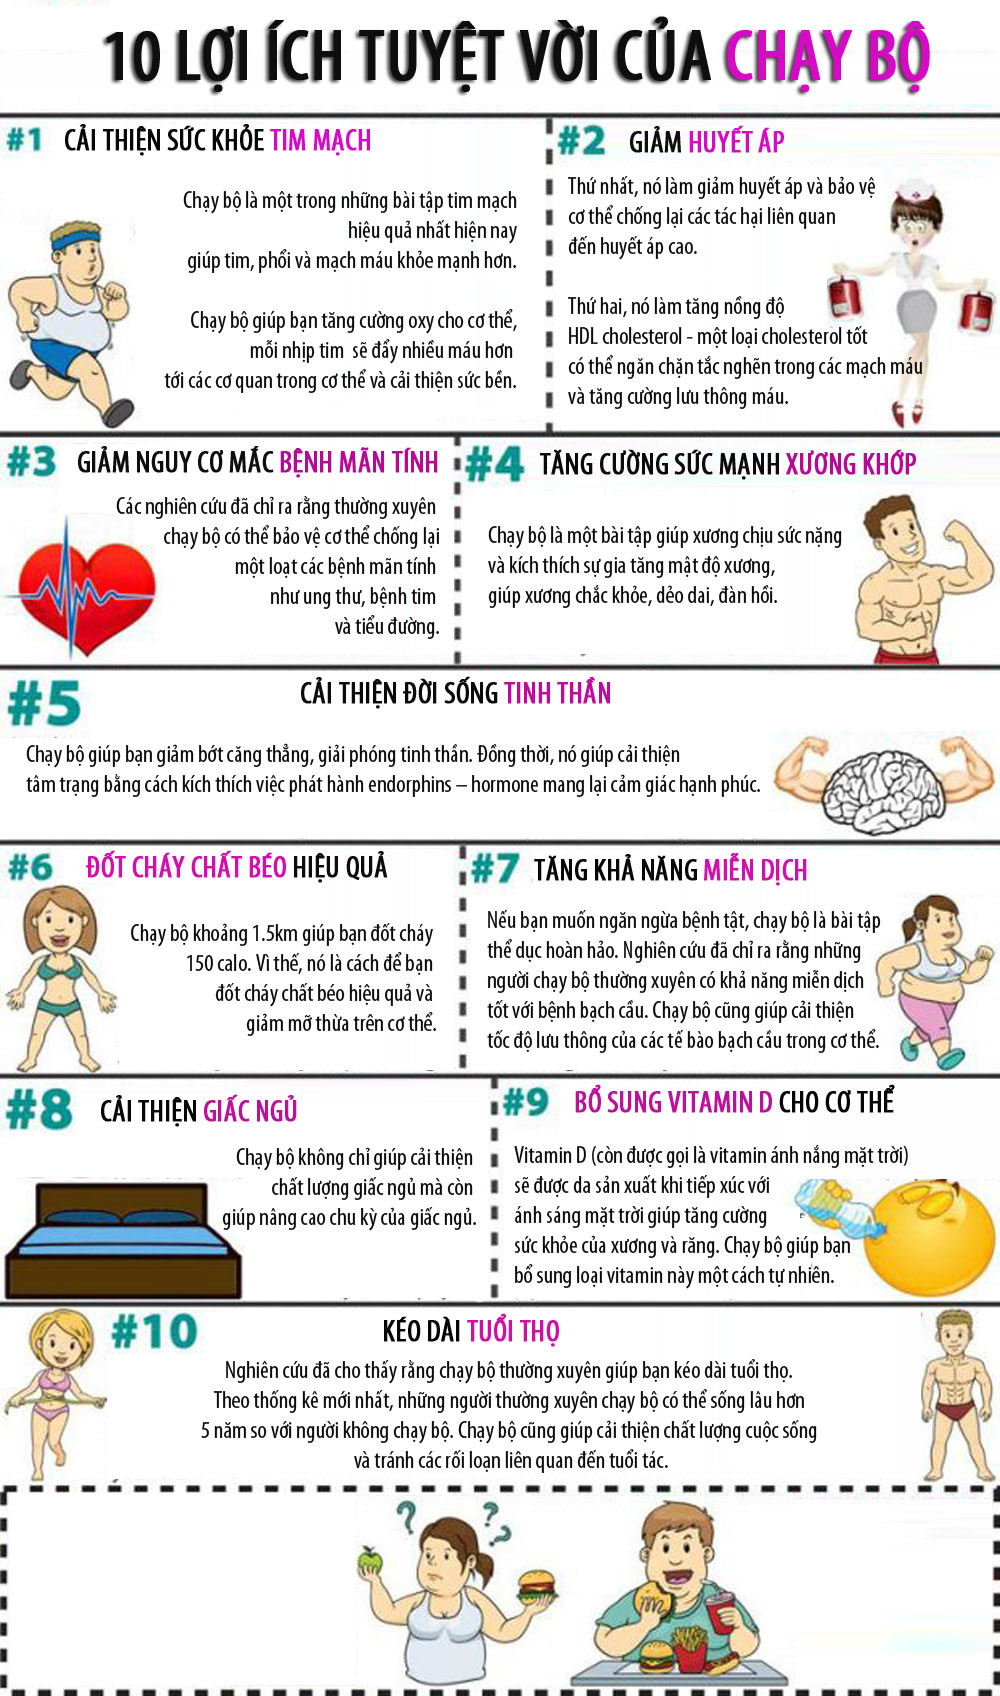 10 lợi ích tuyệt vời của chạy bộ